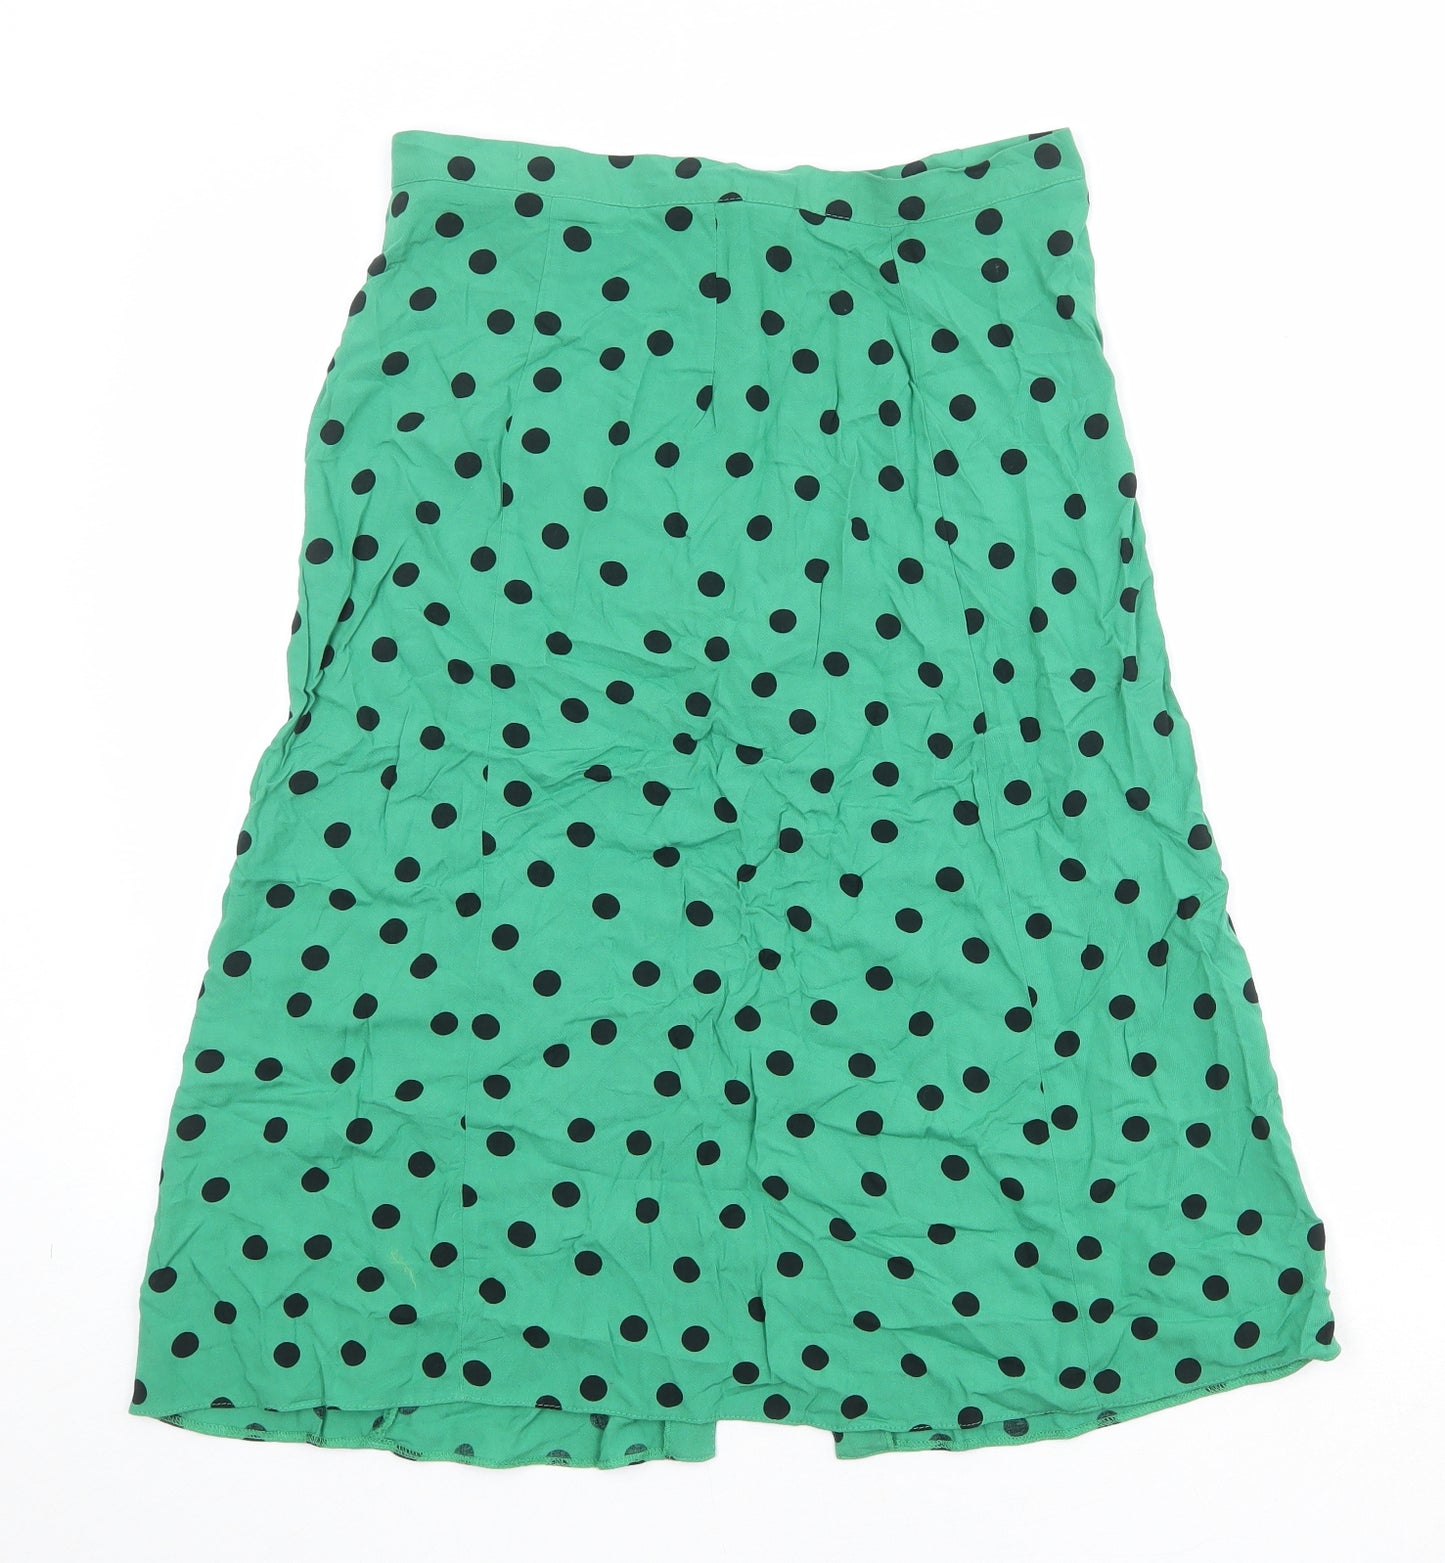 Miss Selfridge Womens Green Polka Dot Viscose A-Line Skirt Size 12 Button